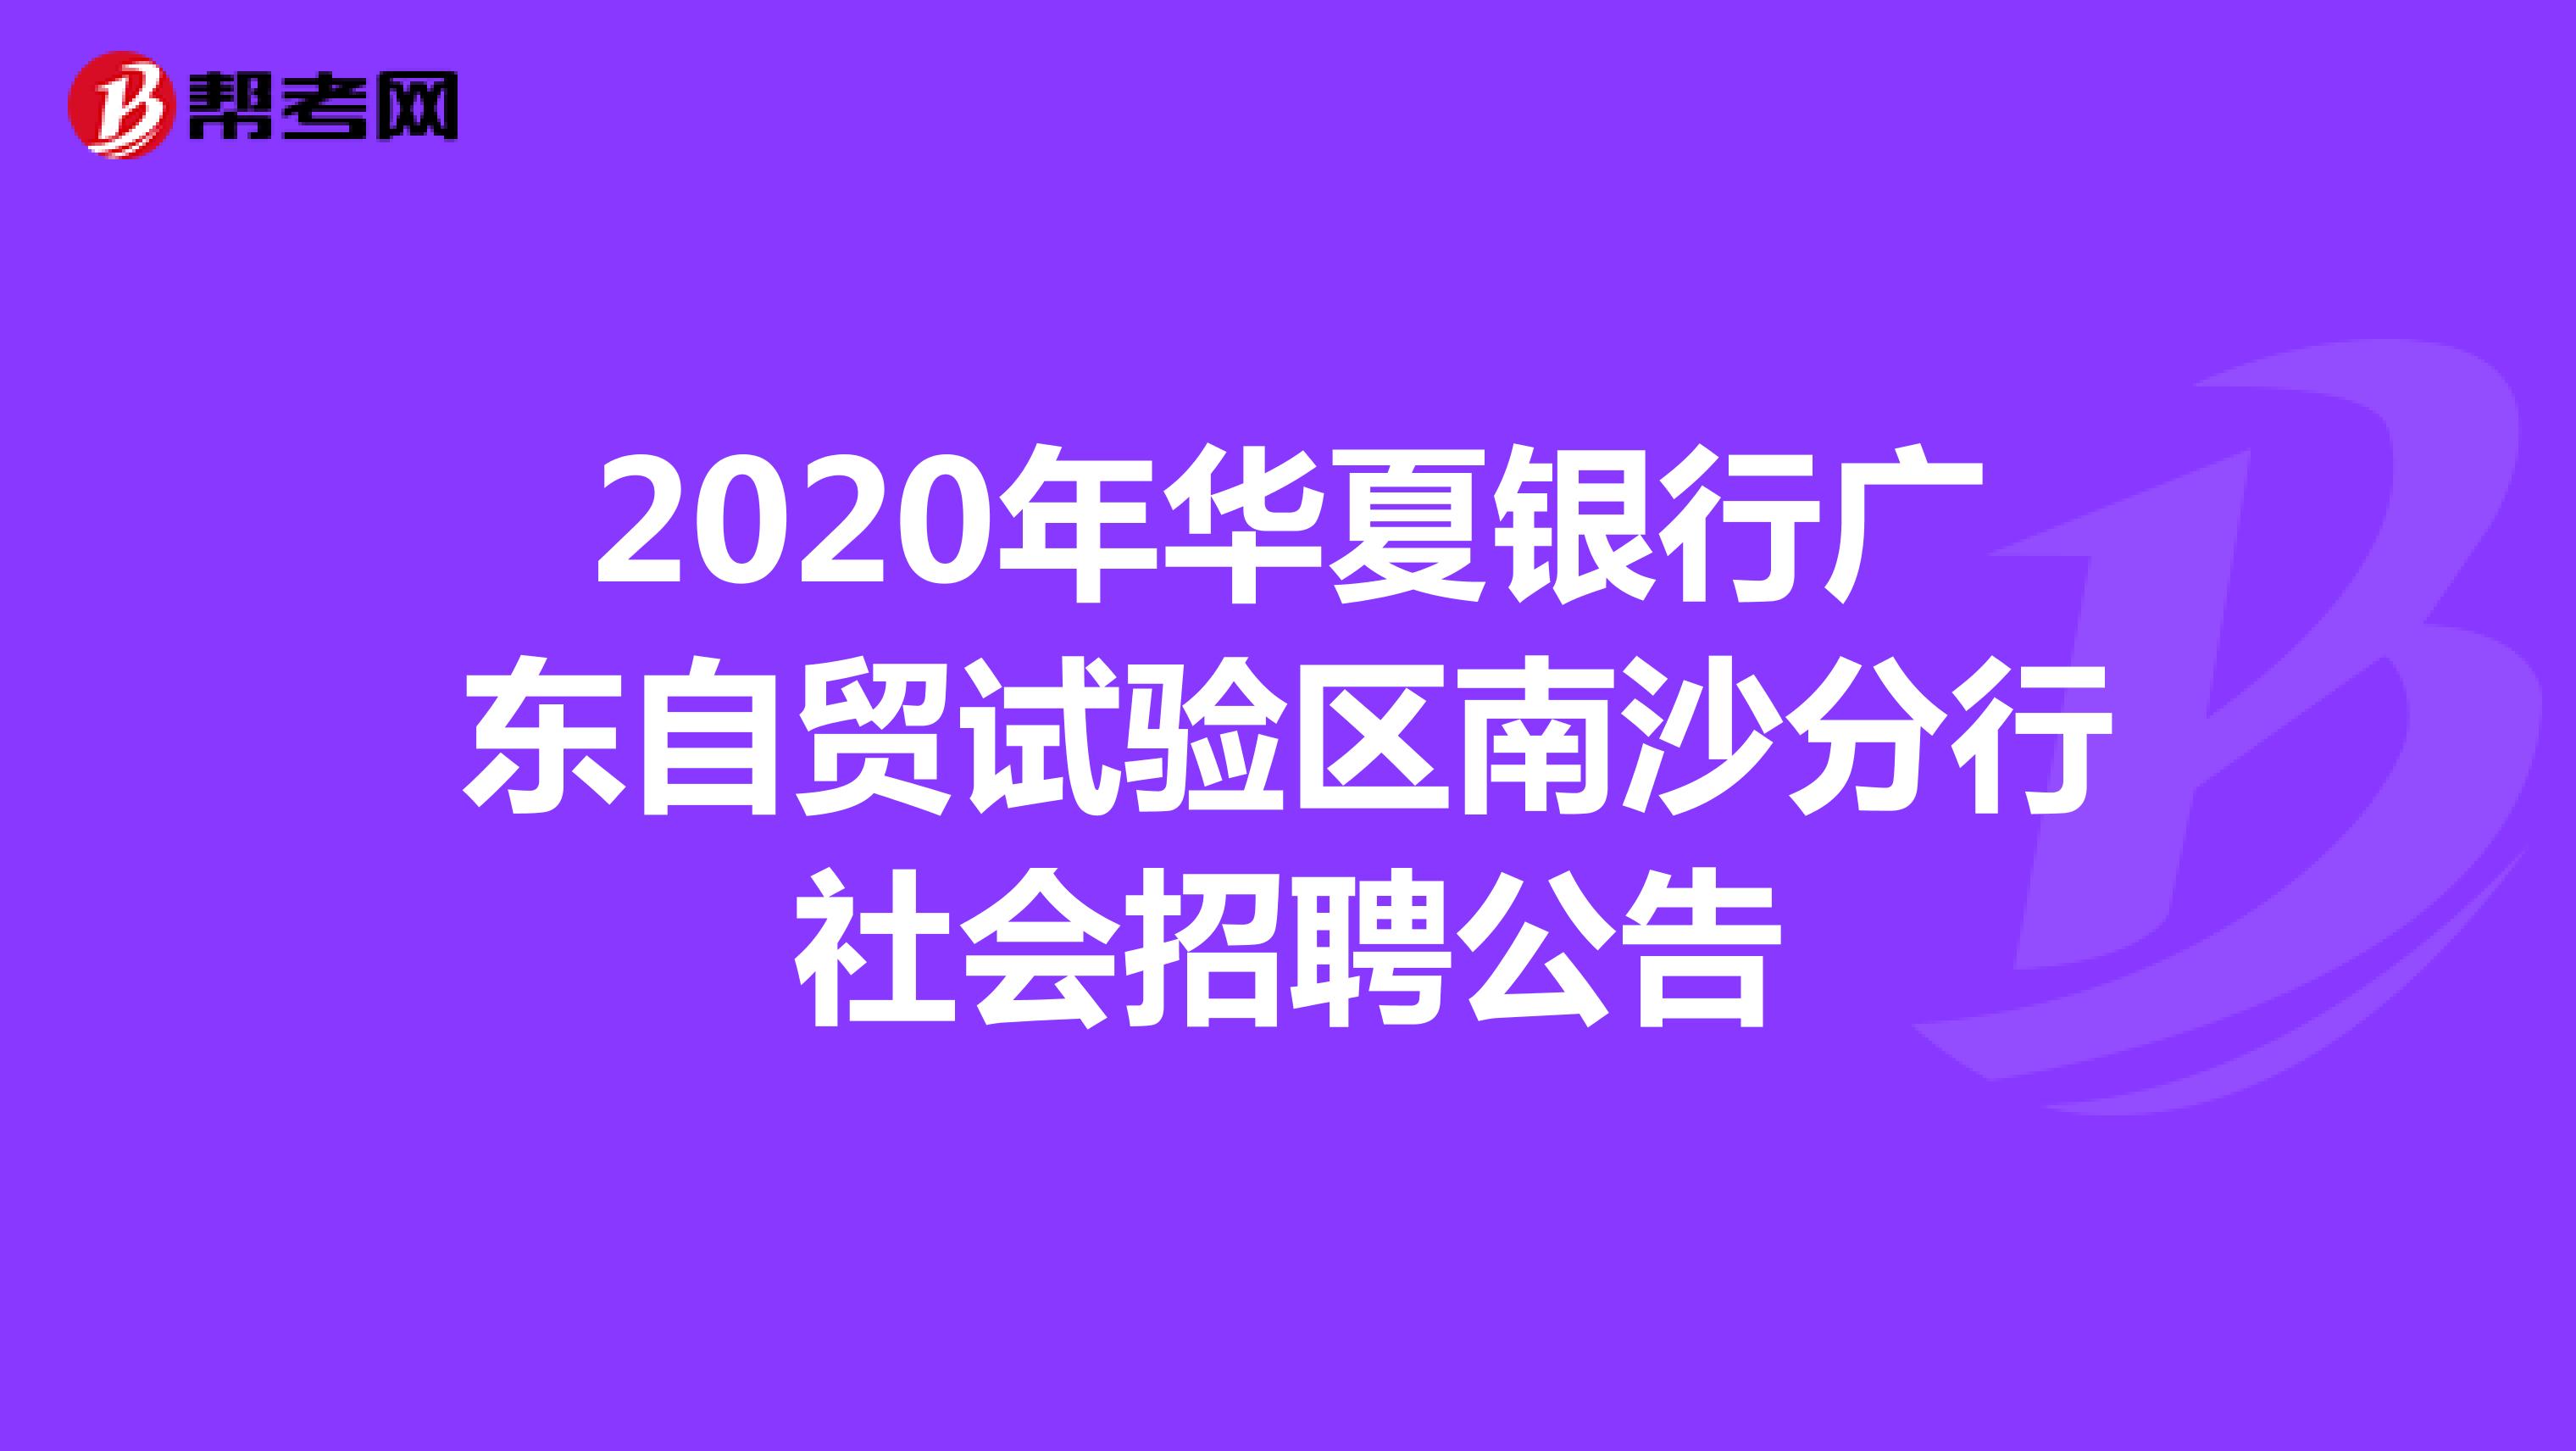 2020年华夏银行广东自贸试验区南沙分行社会招聘公告